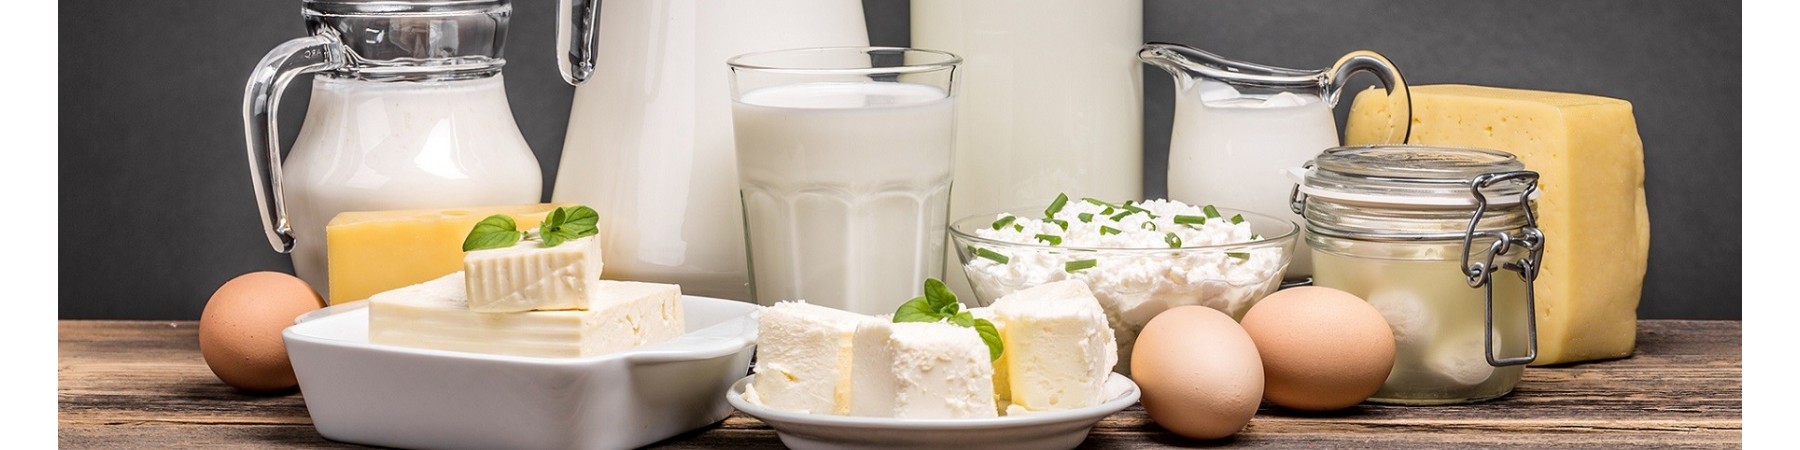 Sữa-bơ,phomai,phomat nhập khẩu chính hãng,gjá rẻ